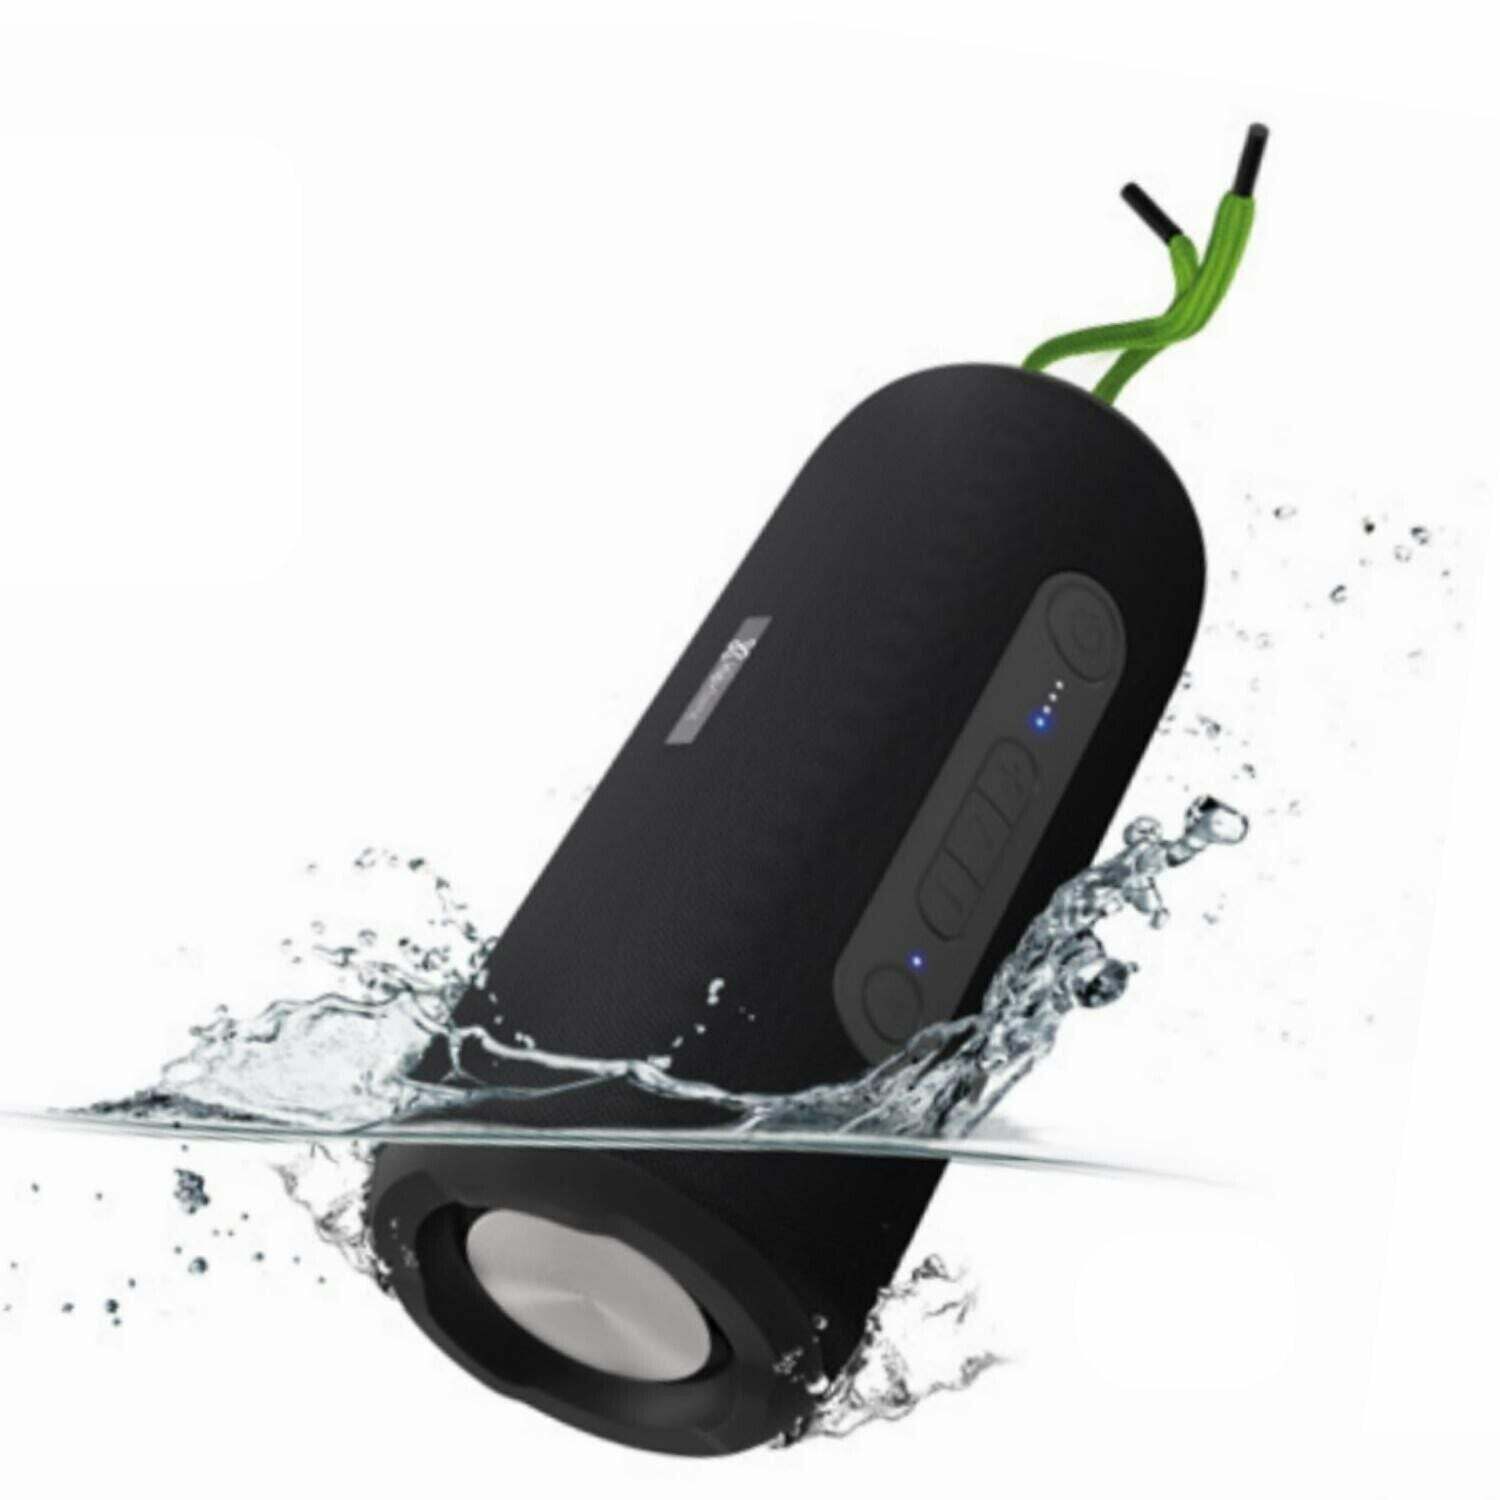 Klip Xtreme Oryx KBS-600 Waterproof Portable Speaker Bluetooth Wireless - Black